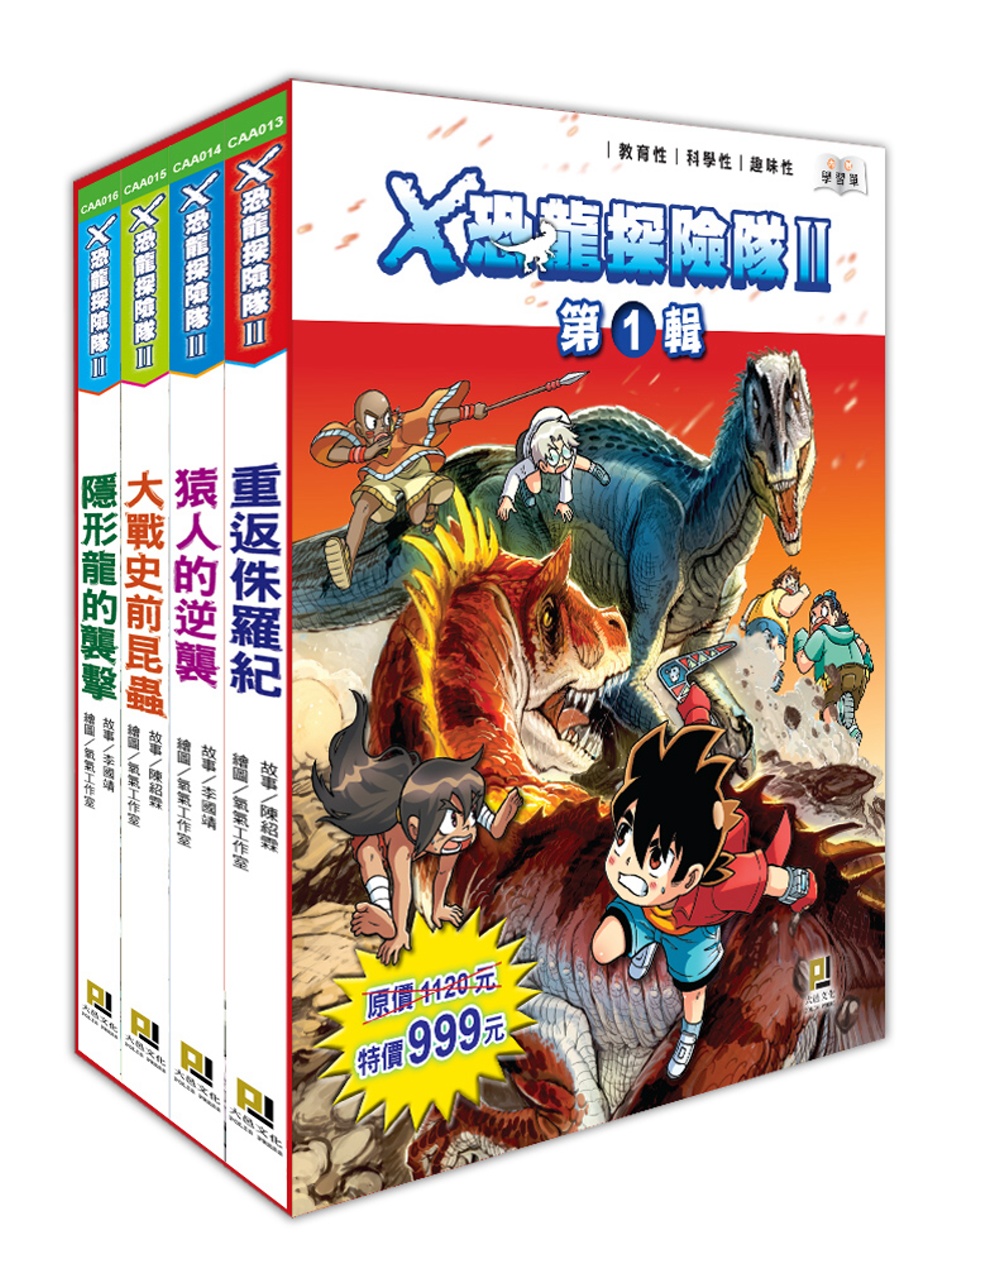 X恐龍探險隊Ⅱ第1輯套書